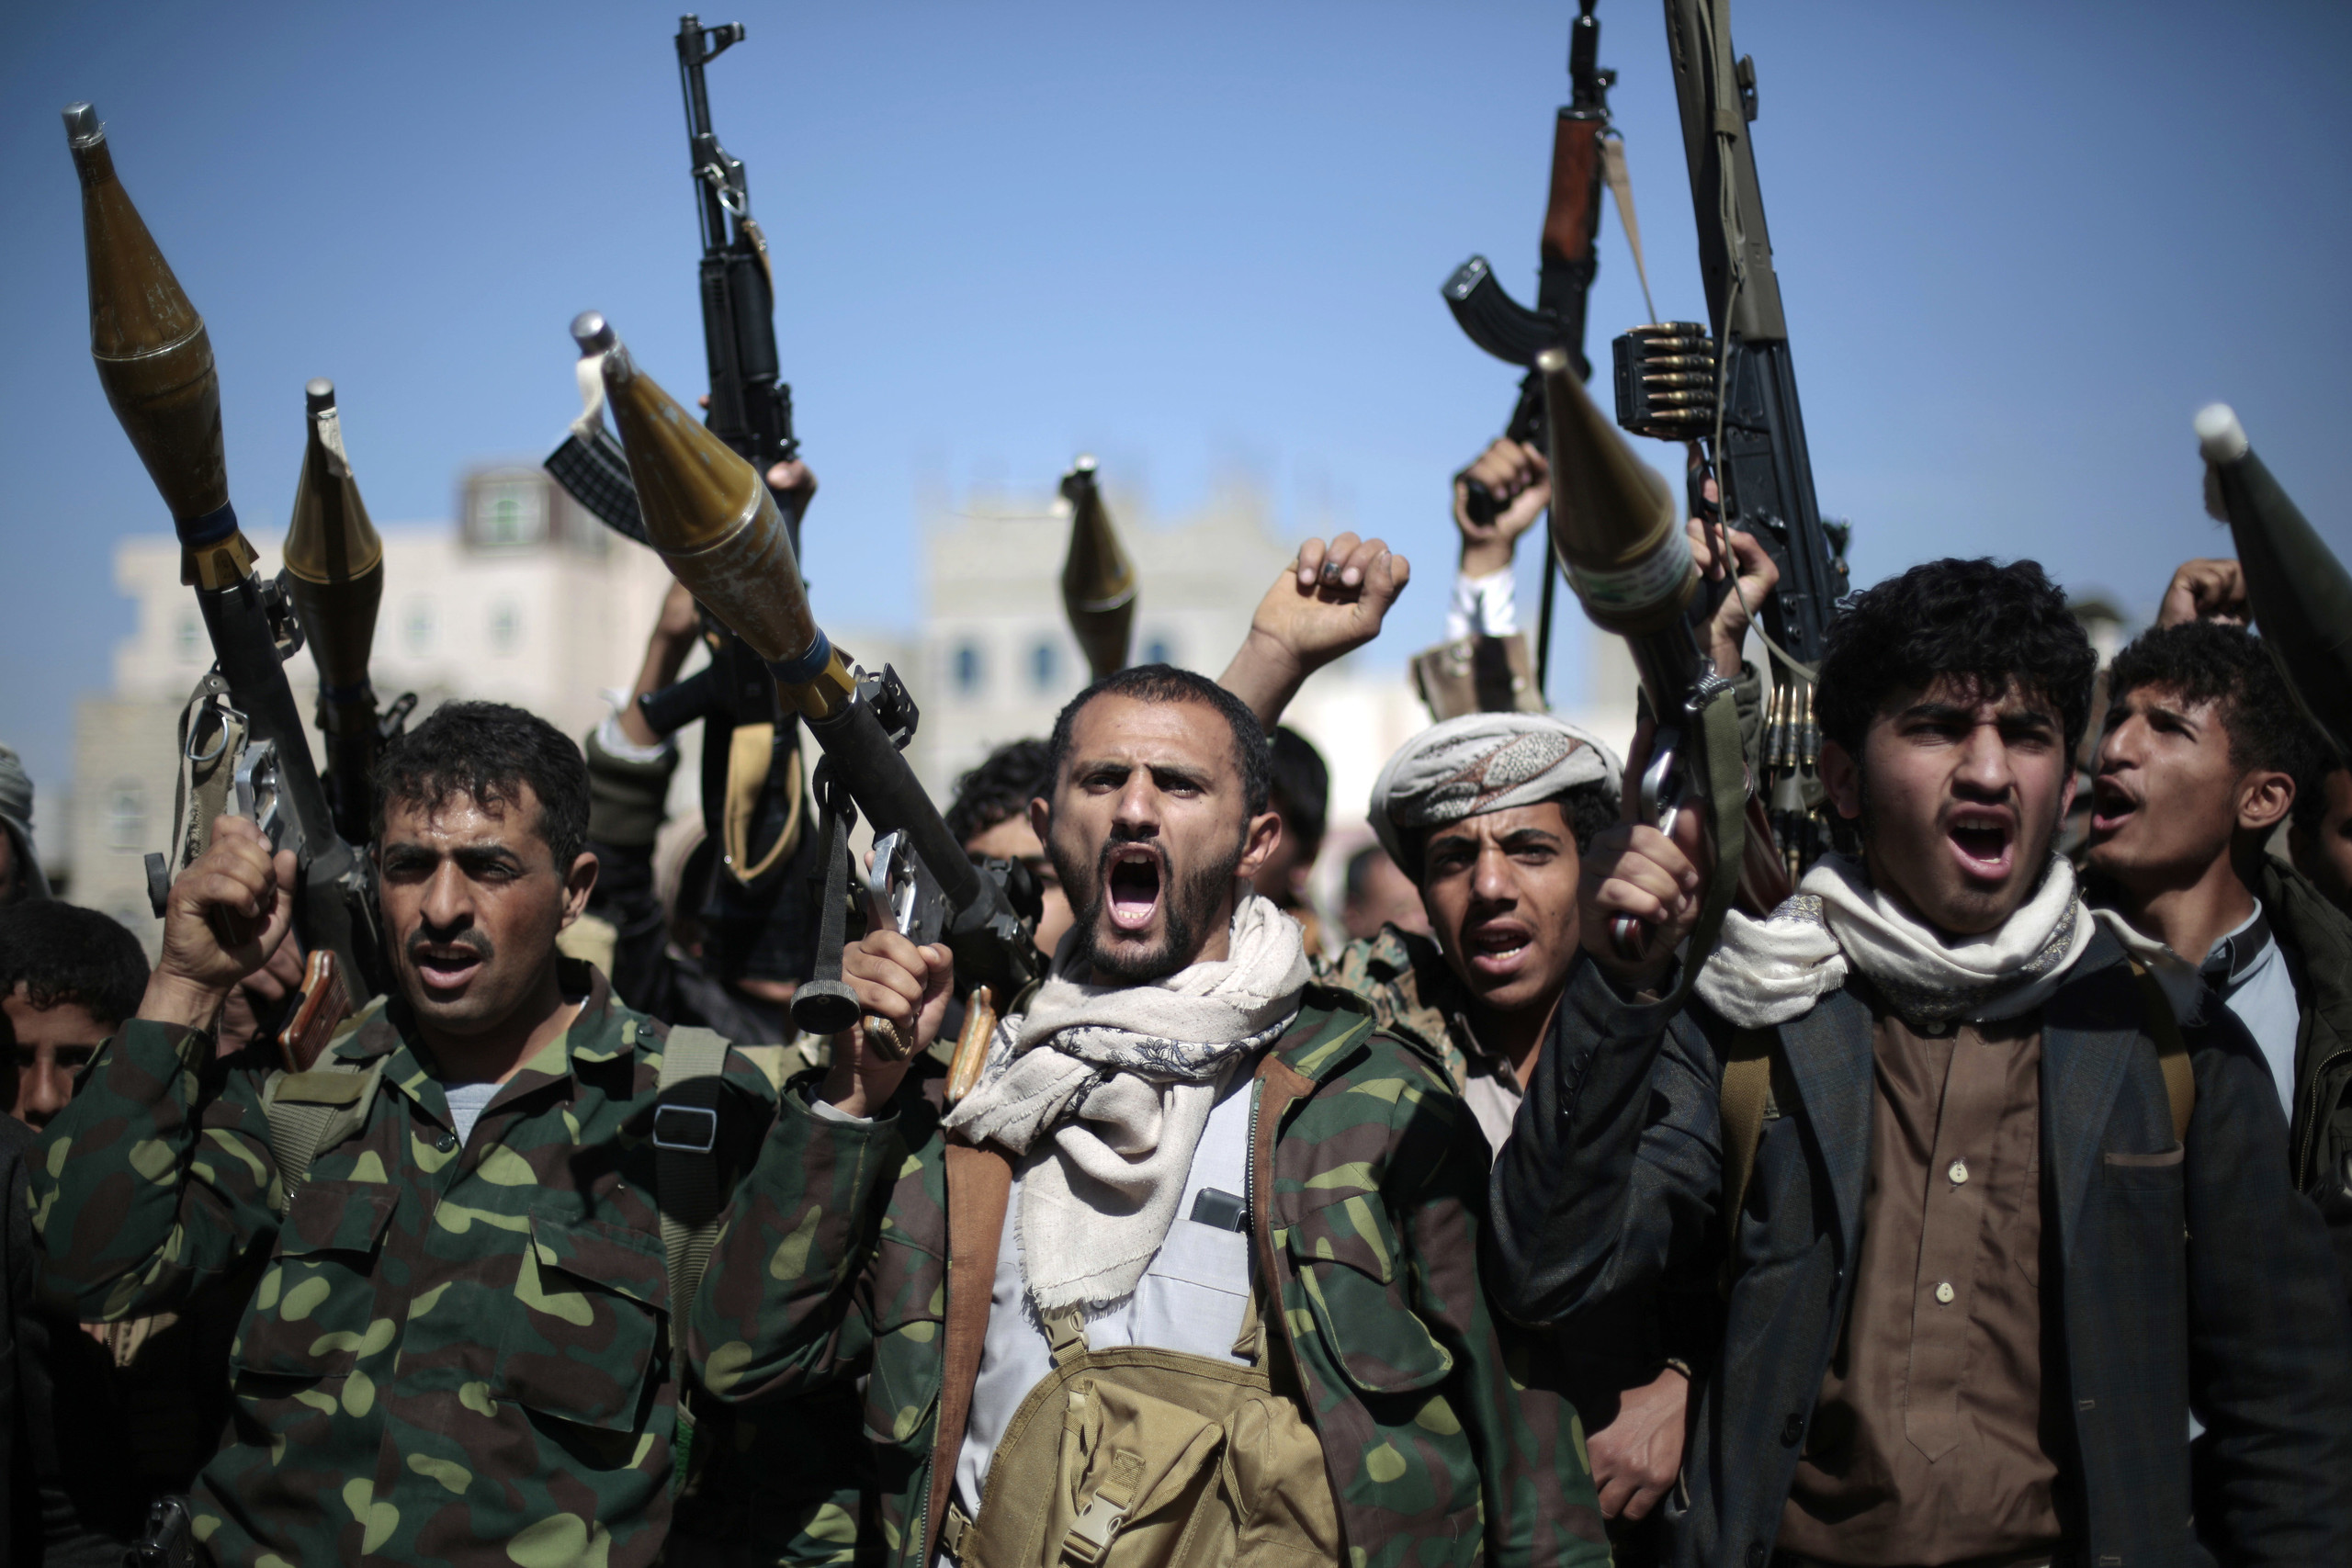 الحوثيون يعترفون بمقتل أحد القيادات المقربين من عبد الملك الحوثي بعد عام من التعتيم (من يكون ؟)